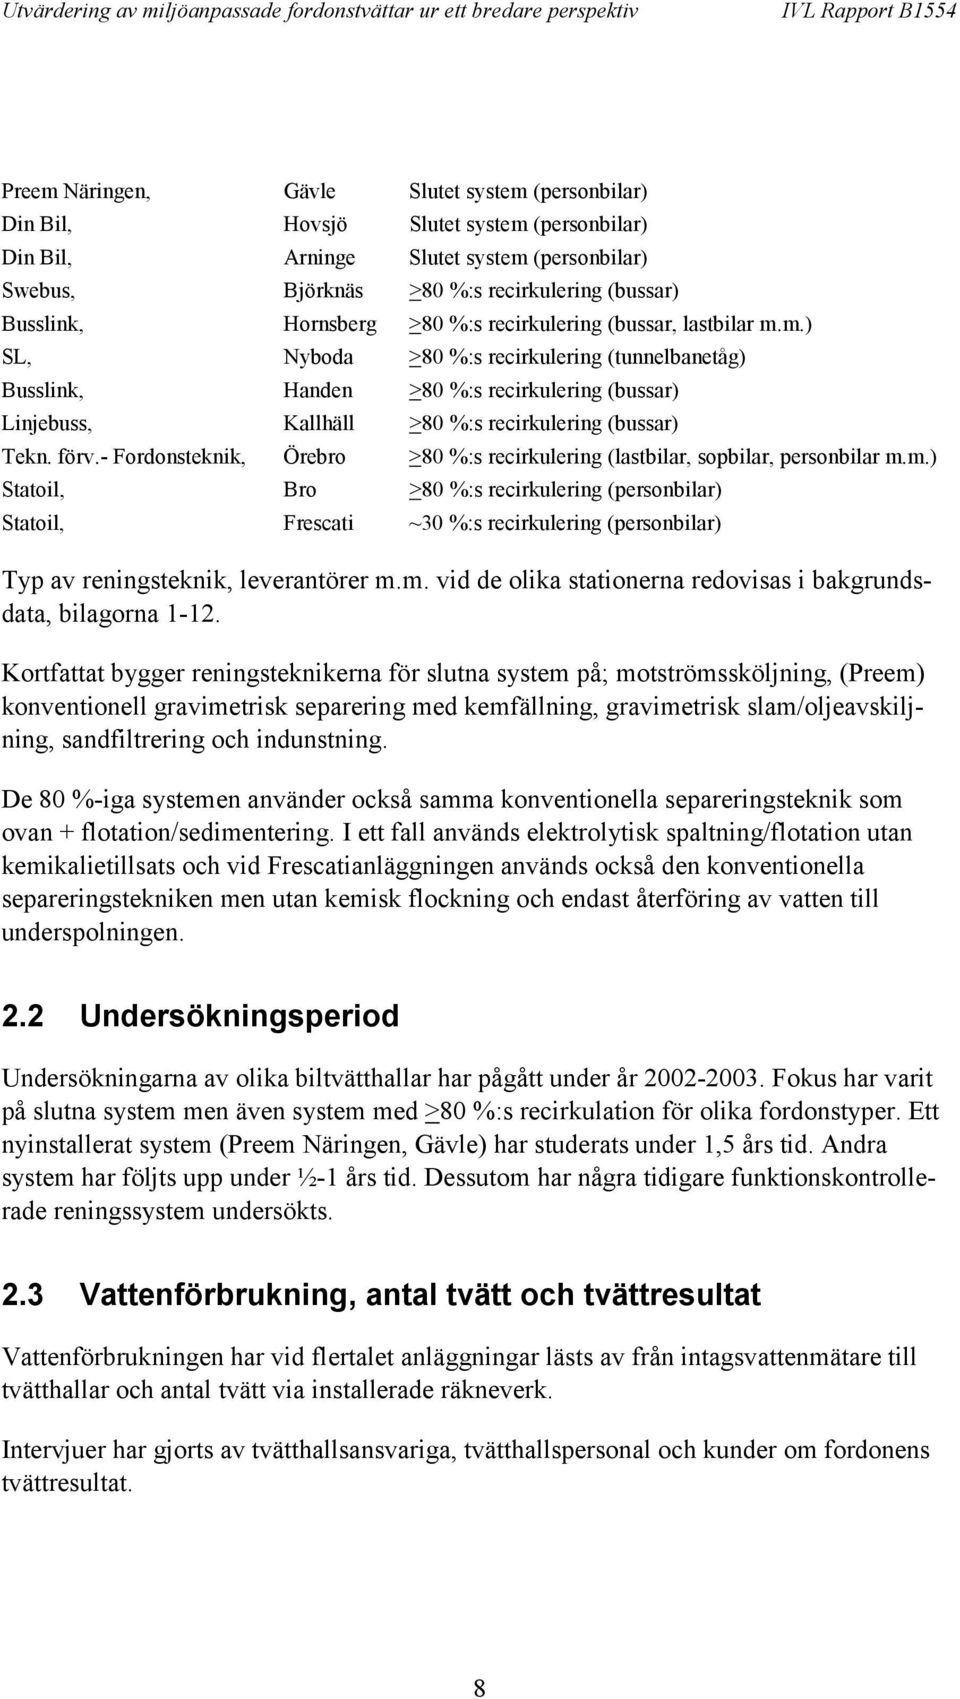 m.) SL, Nyboda >80 %:s recirkulering (tunnelbanetåg) Busslink, Handen >80 %:s recirkulering (bussar) Linjebuss, Kallhäll >80 %:s recirkulering (bussar) Tekn. förv.